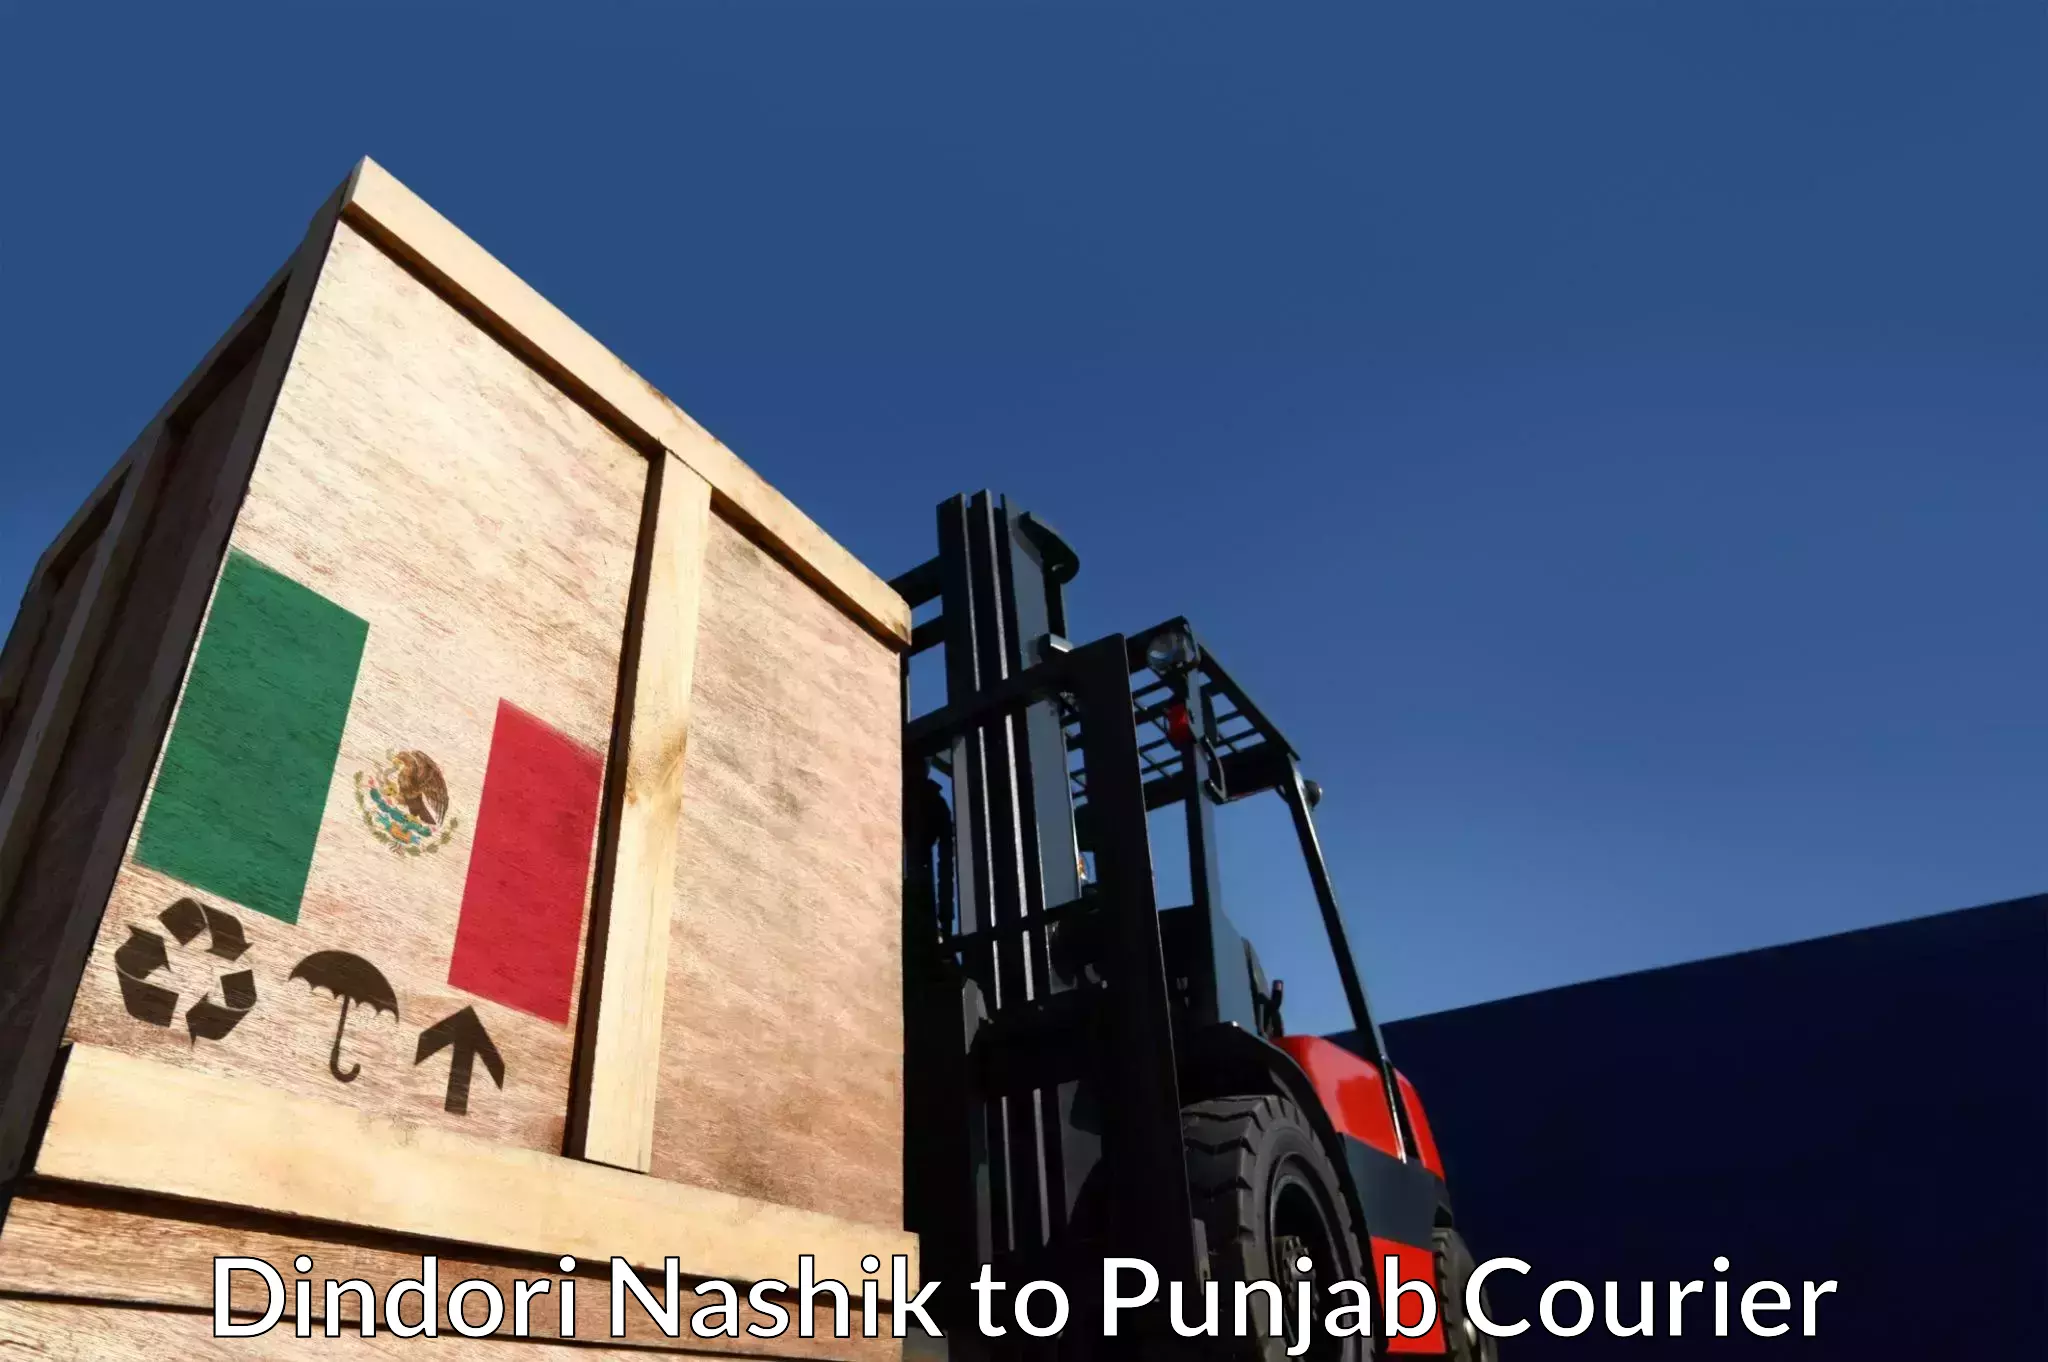 Courier insurance Dindori Nashik to Punjab